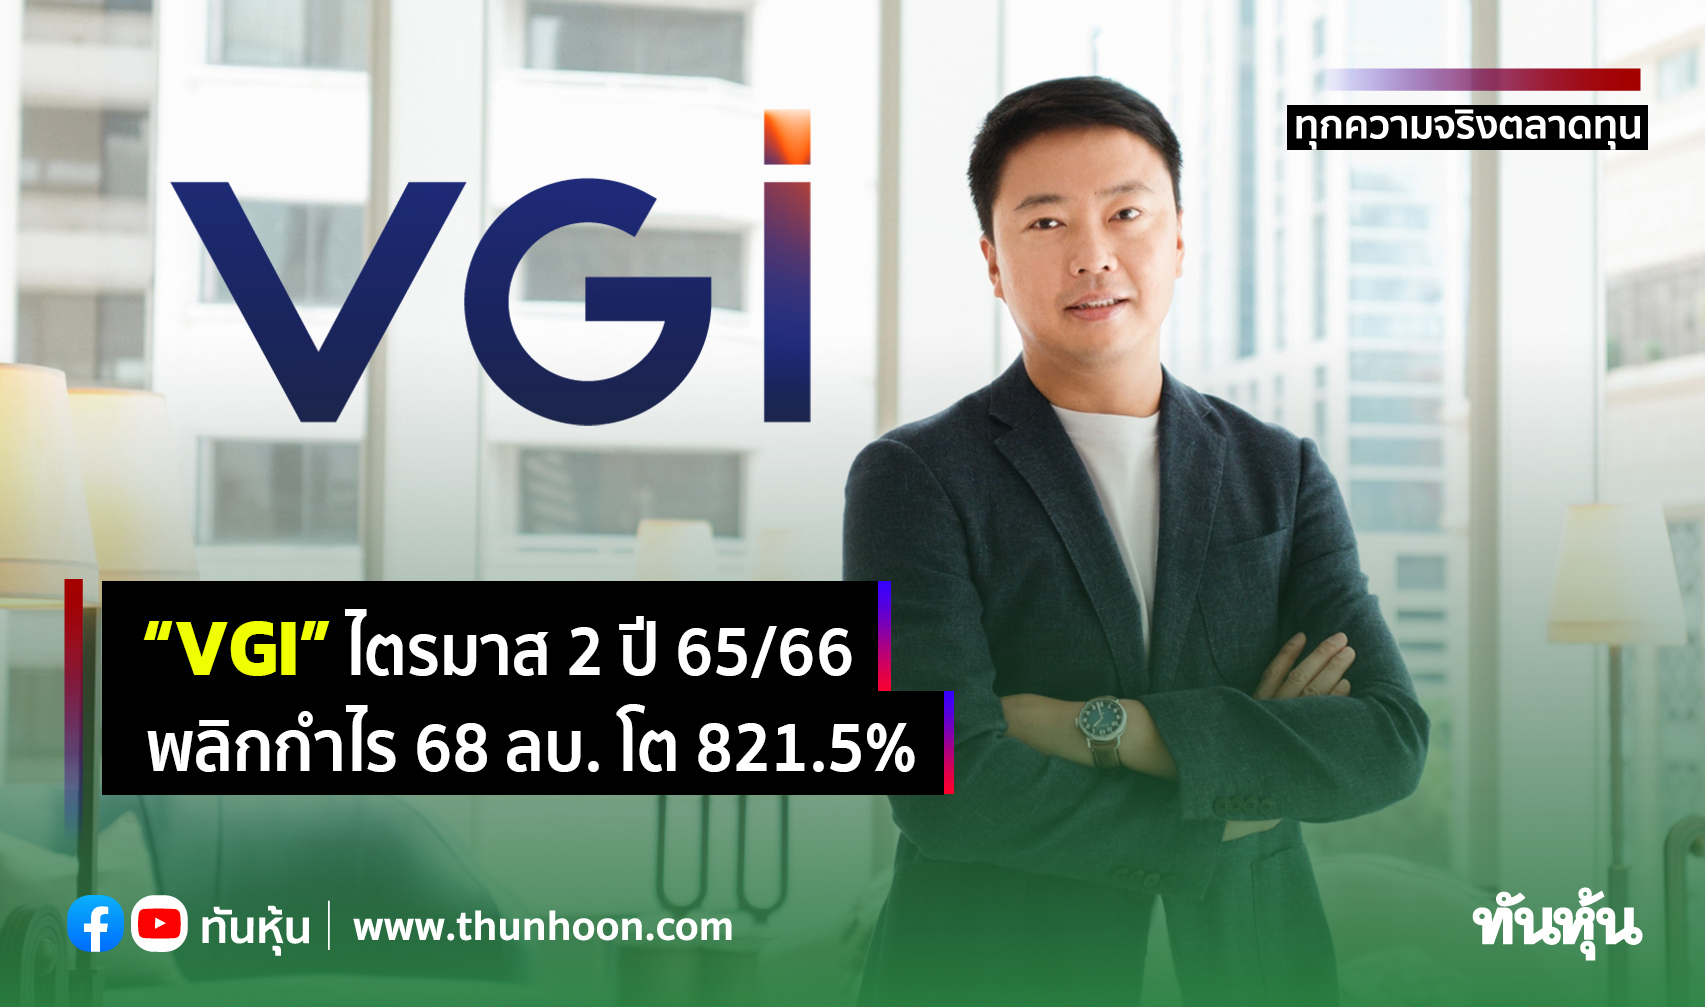 “VGI” ไตรมาส 2 ปี 65/66  พลิกกำไร 68 ลบ. โต 821.5%